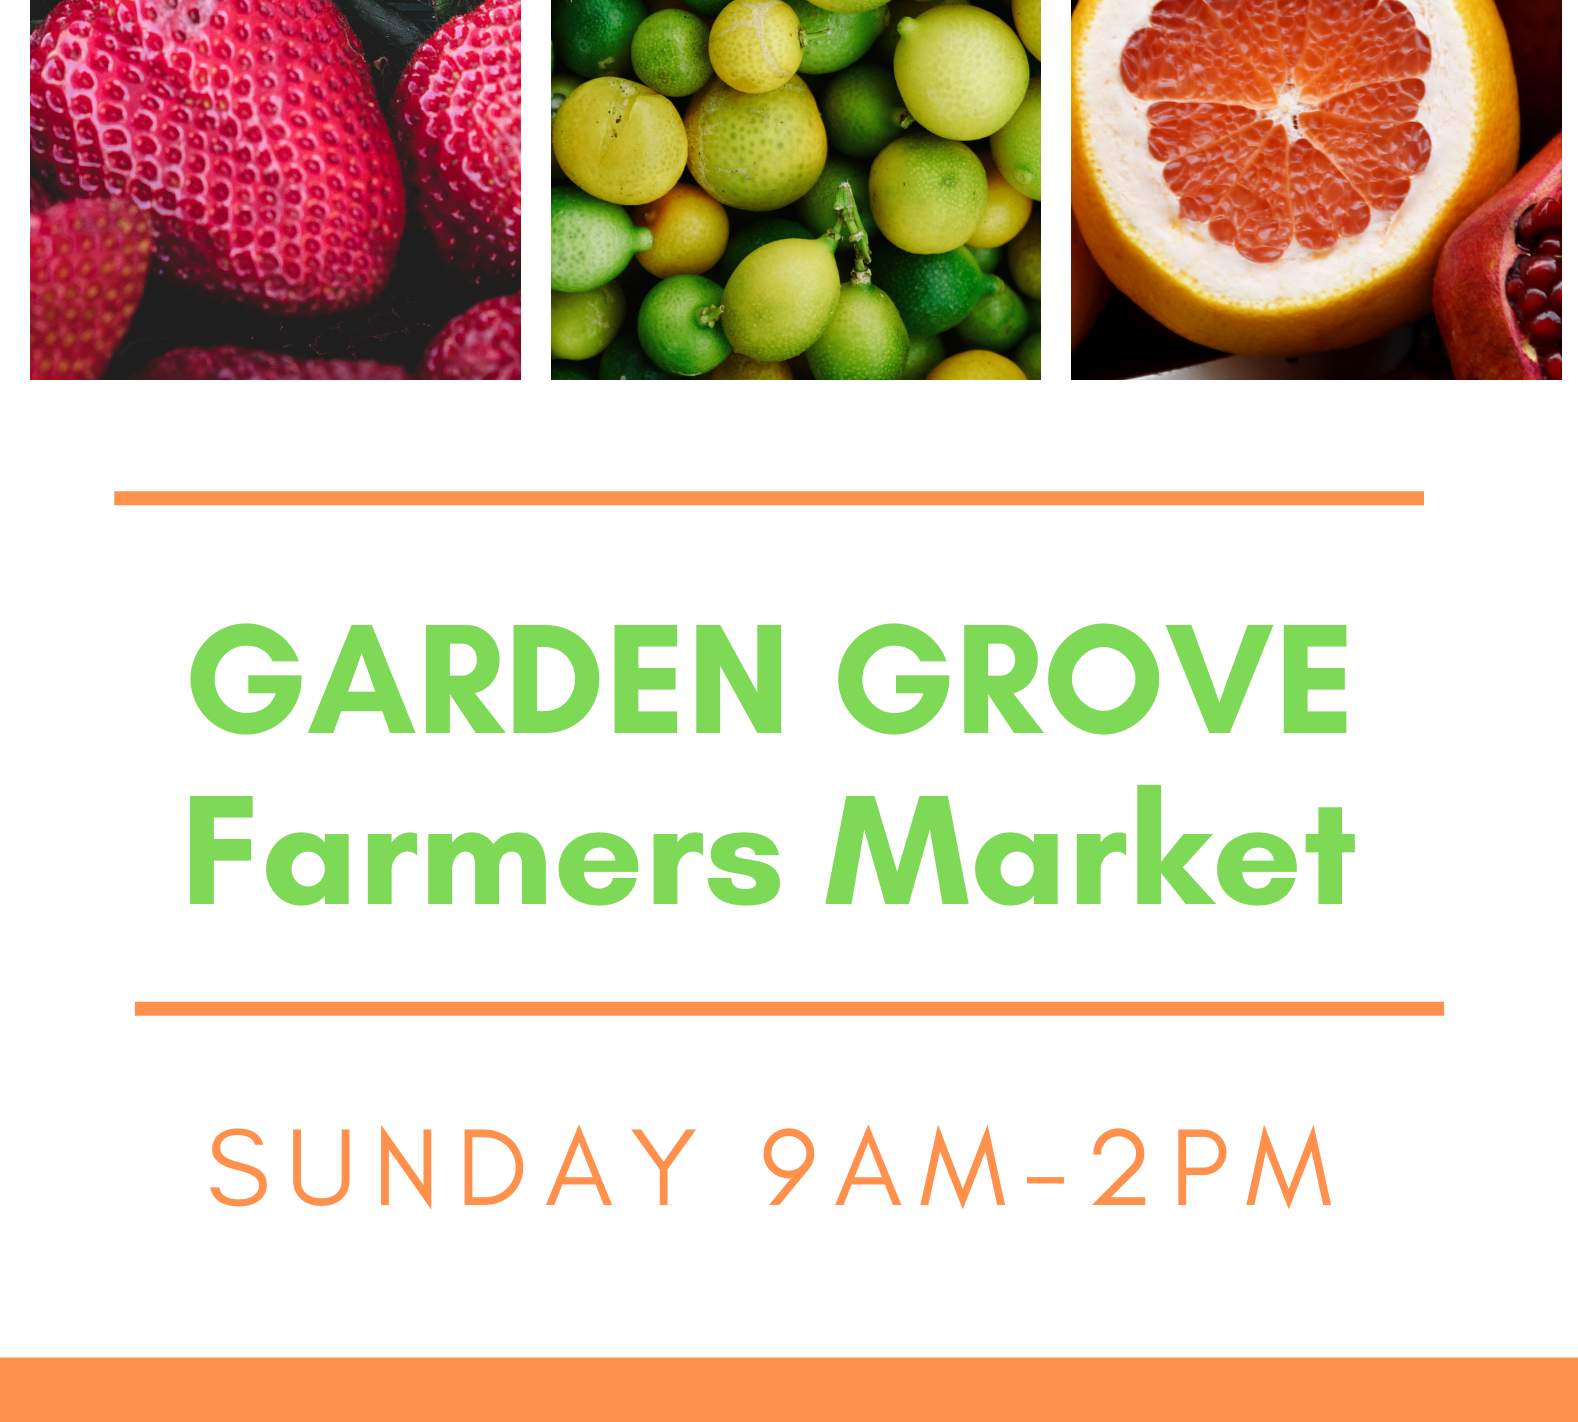 Garden Grove Farmers Market